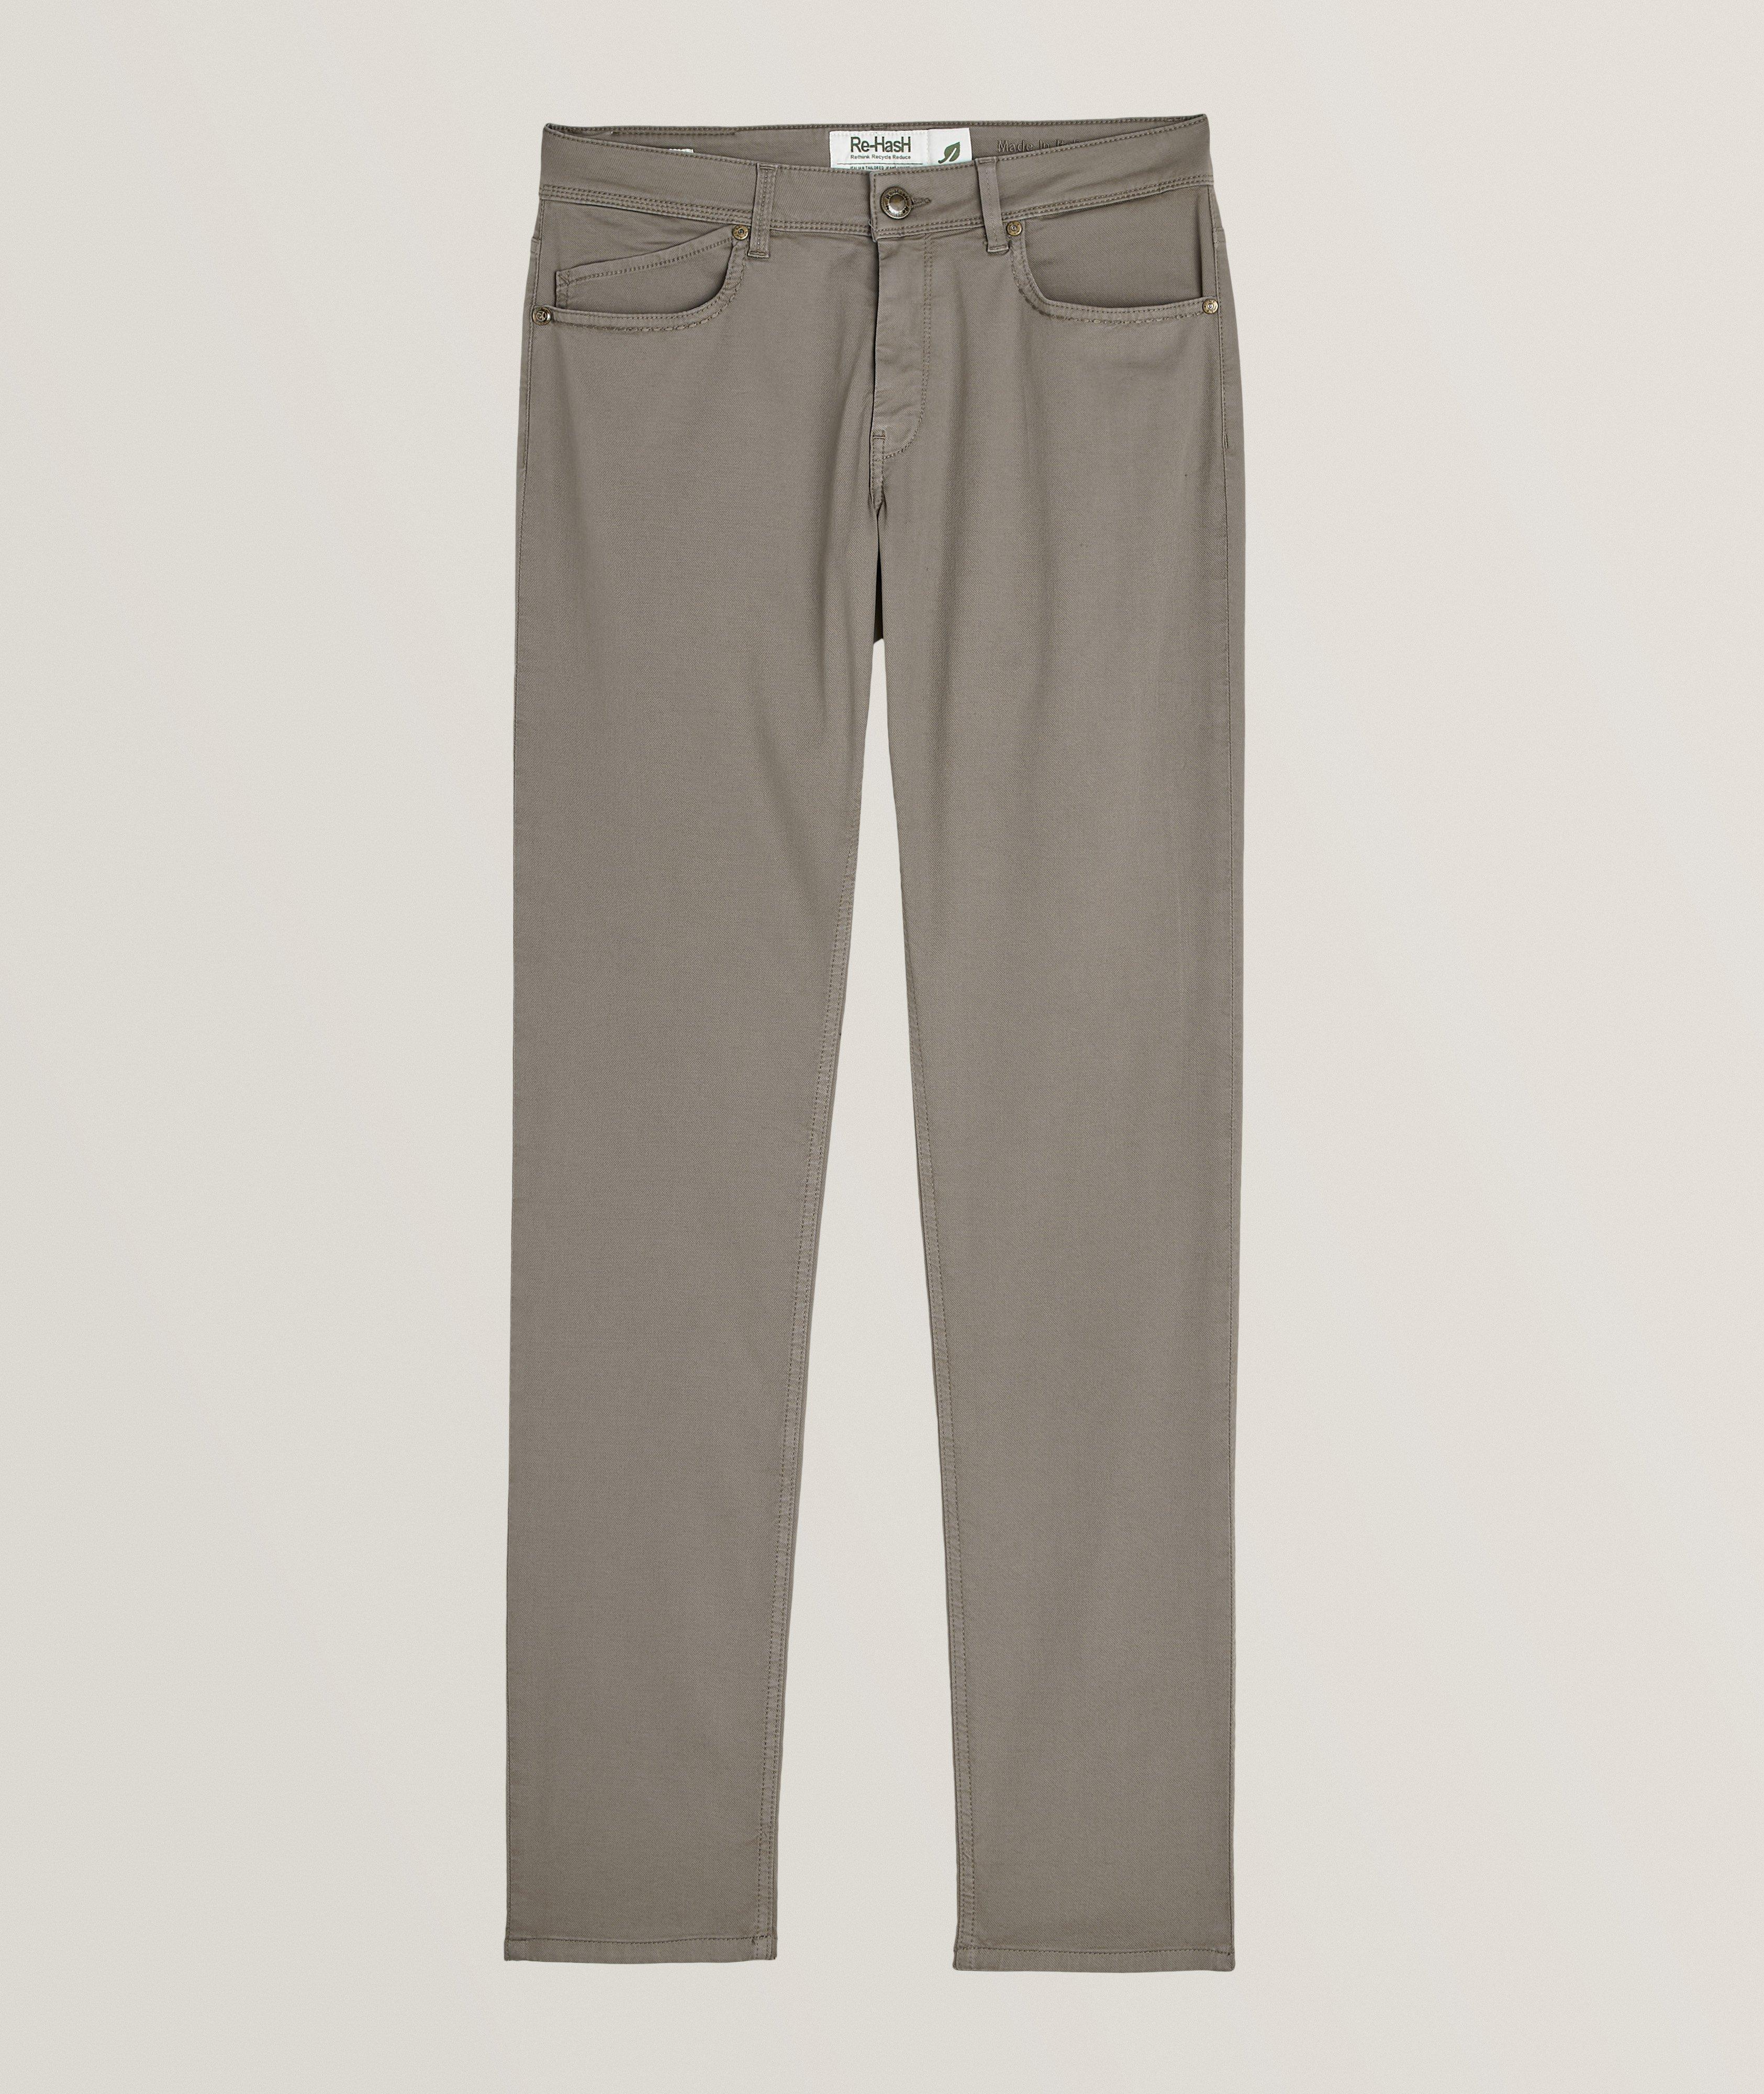 Rubens Sportswear Chic Stretch-Cotton Blend Pants image 0